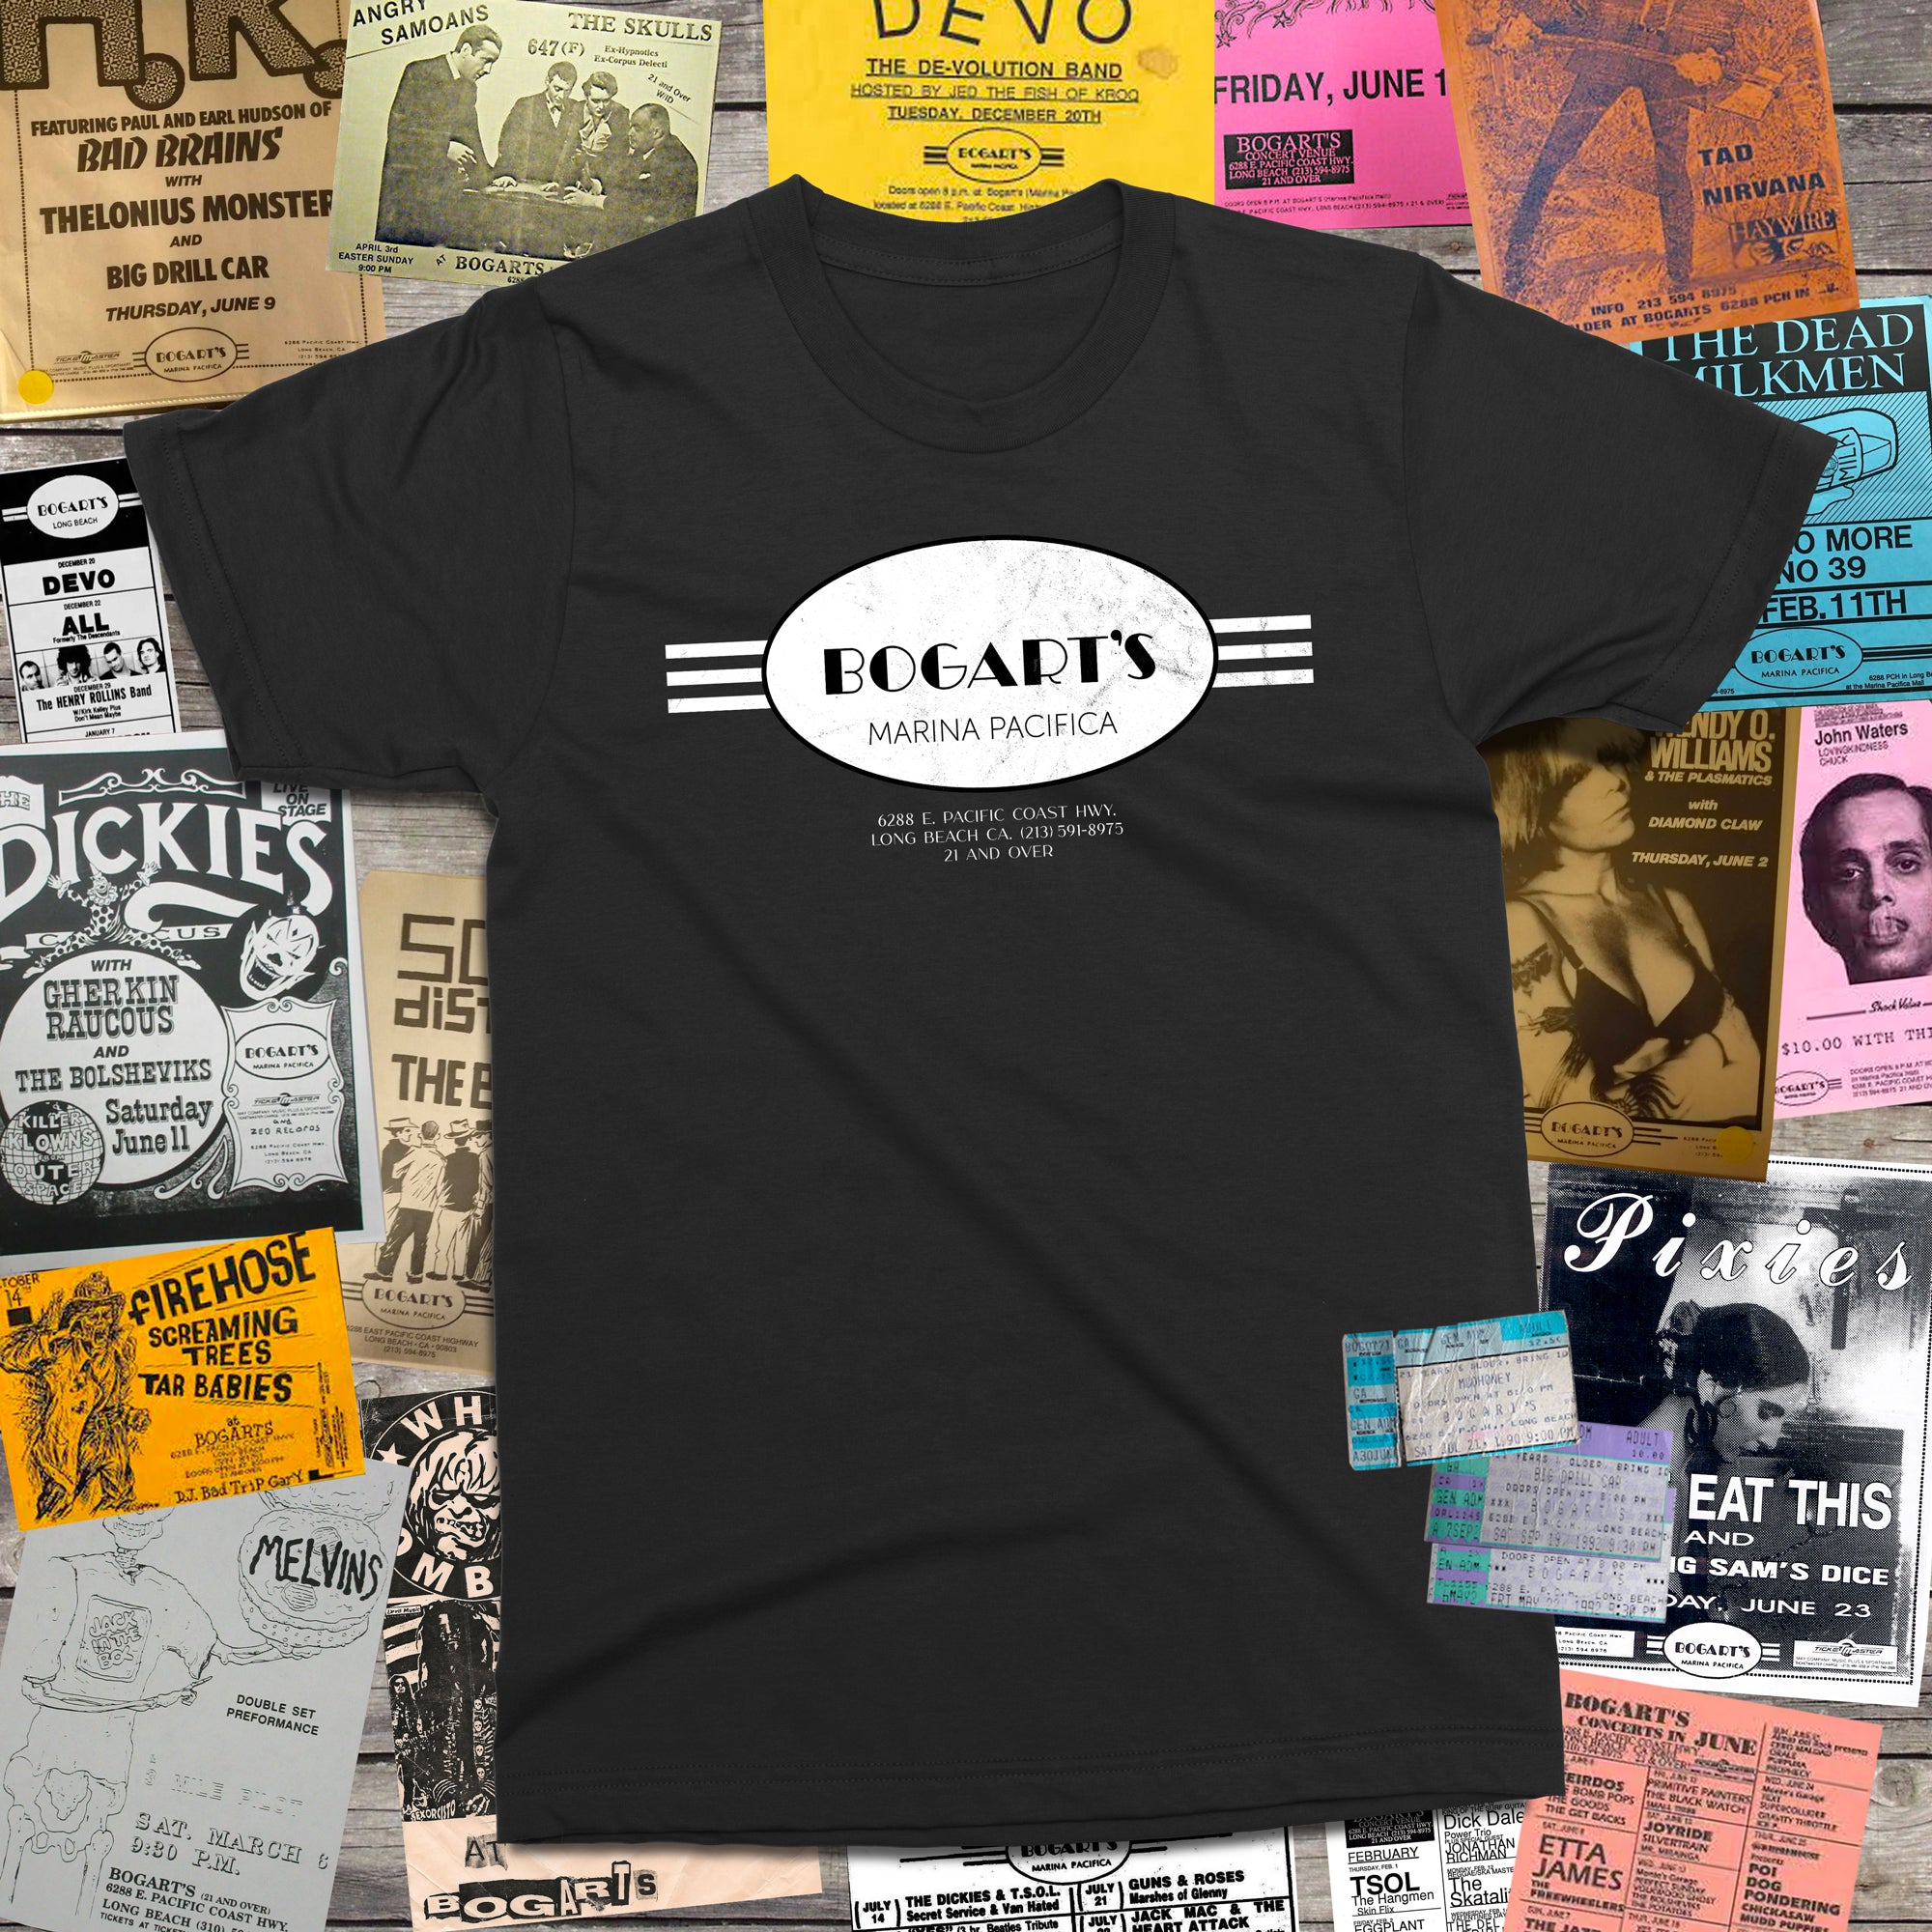 Bogart's T-Shirt